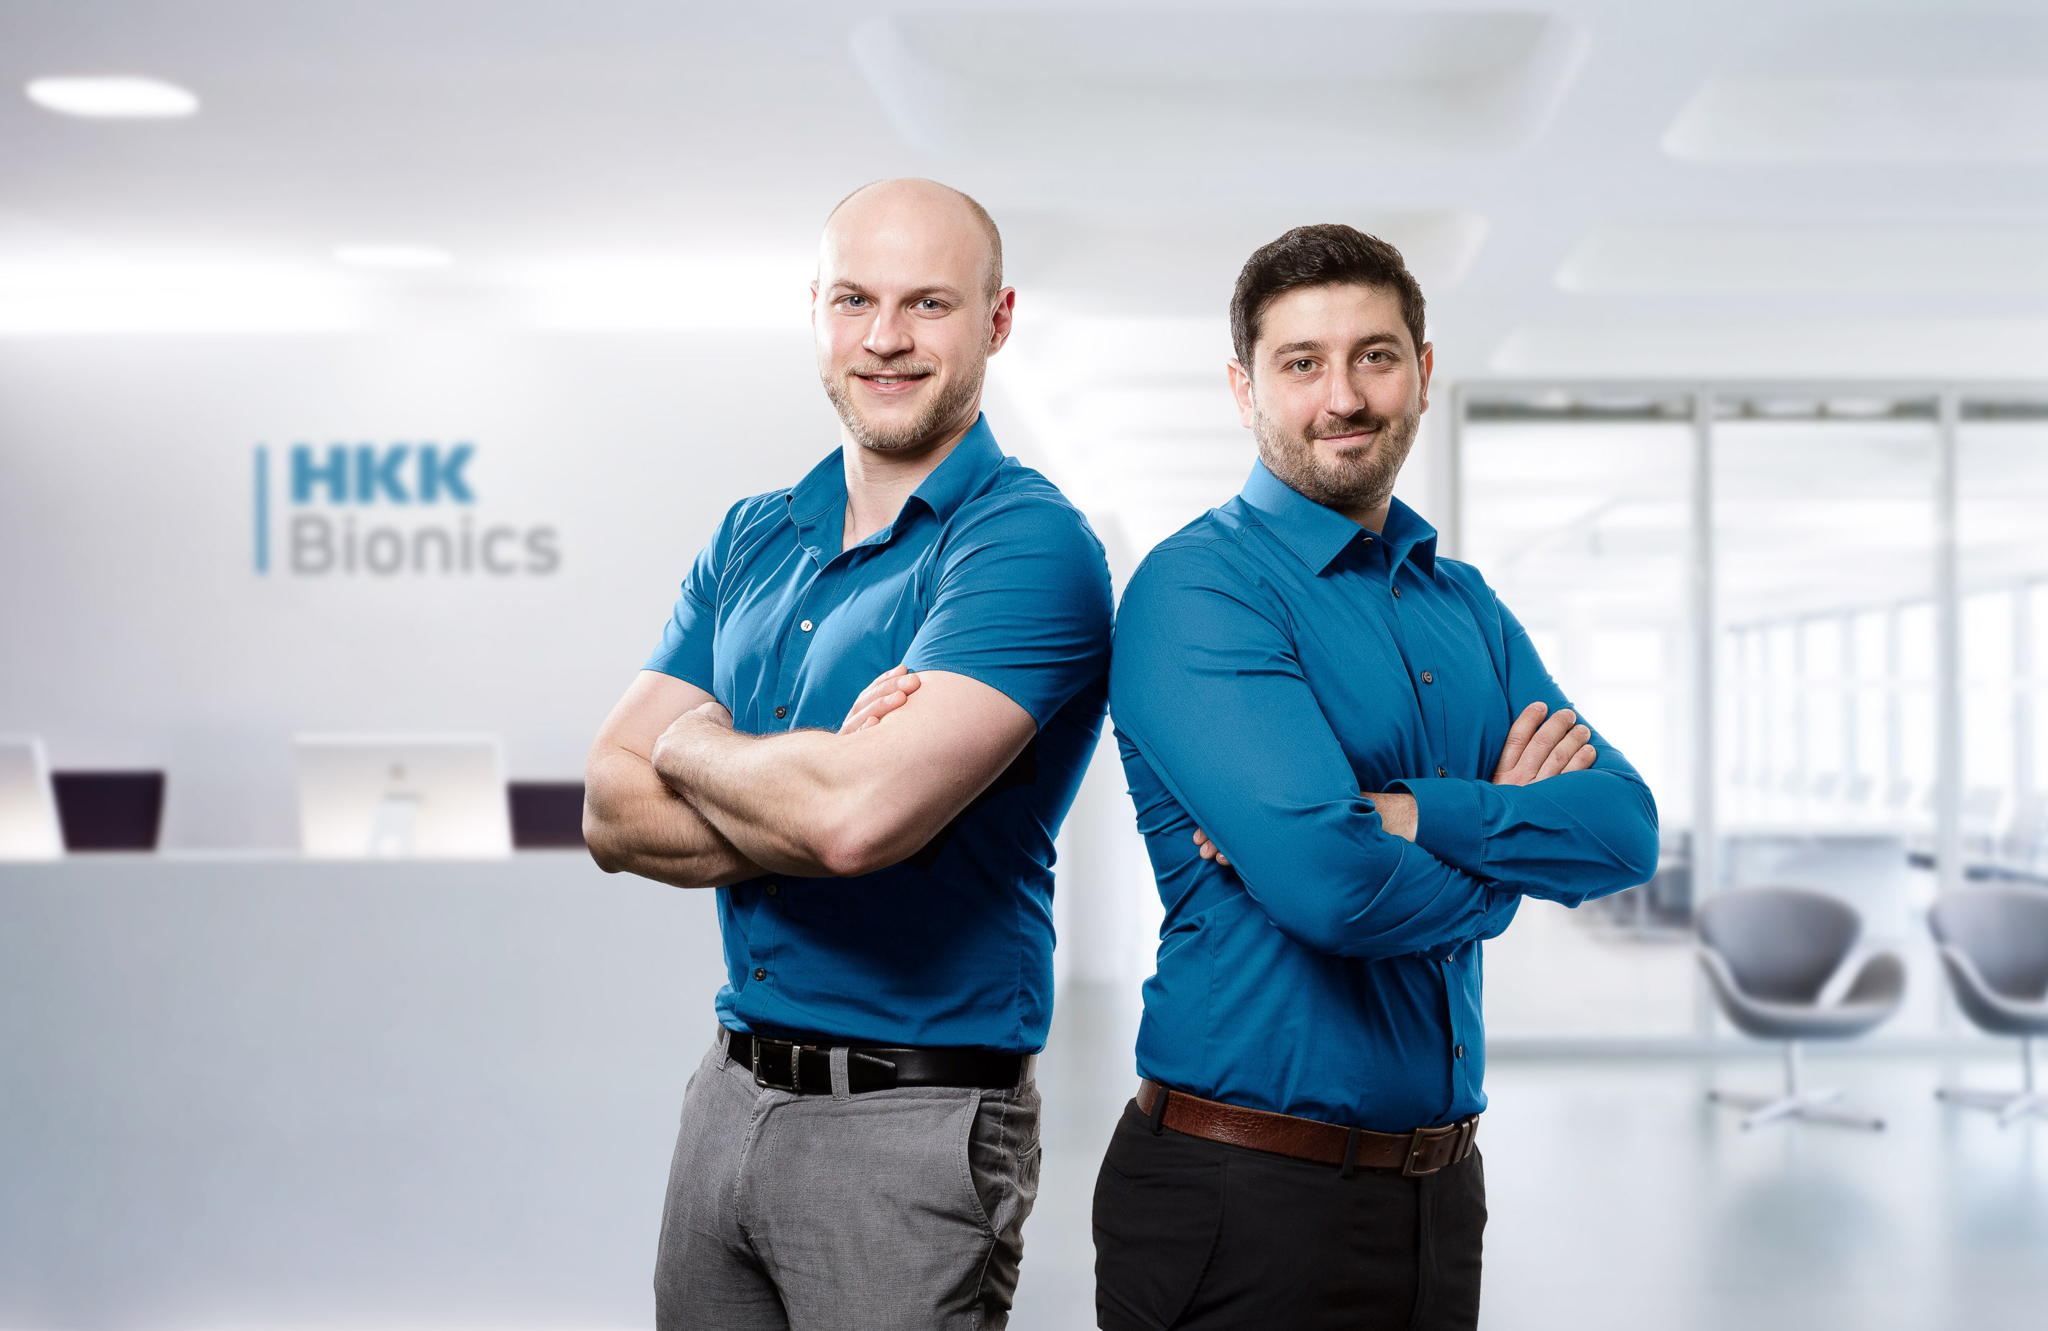 Das Bild zeigt die beiden Unternehmensgründer Dominik Hepp und Tobias Knobloch sowie im Hintergrund das Emblem des Spin-off HKK Bionics.